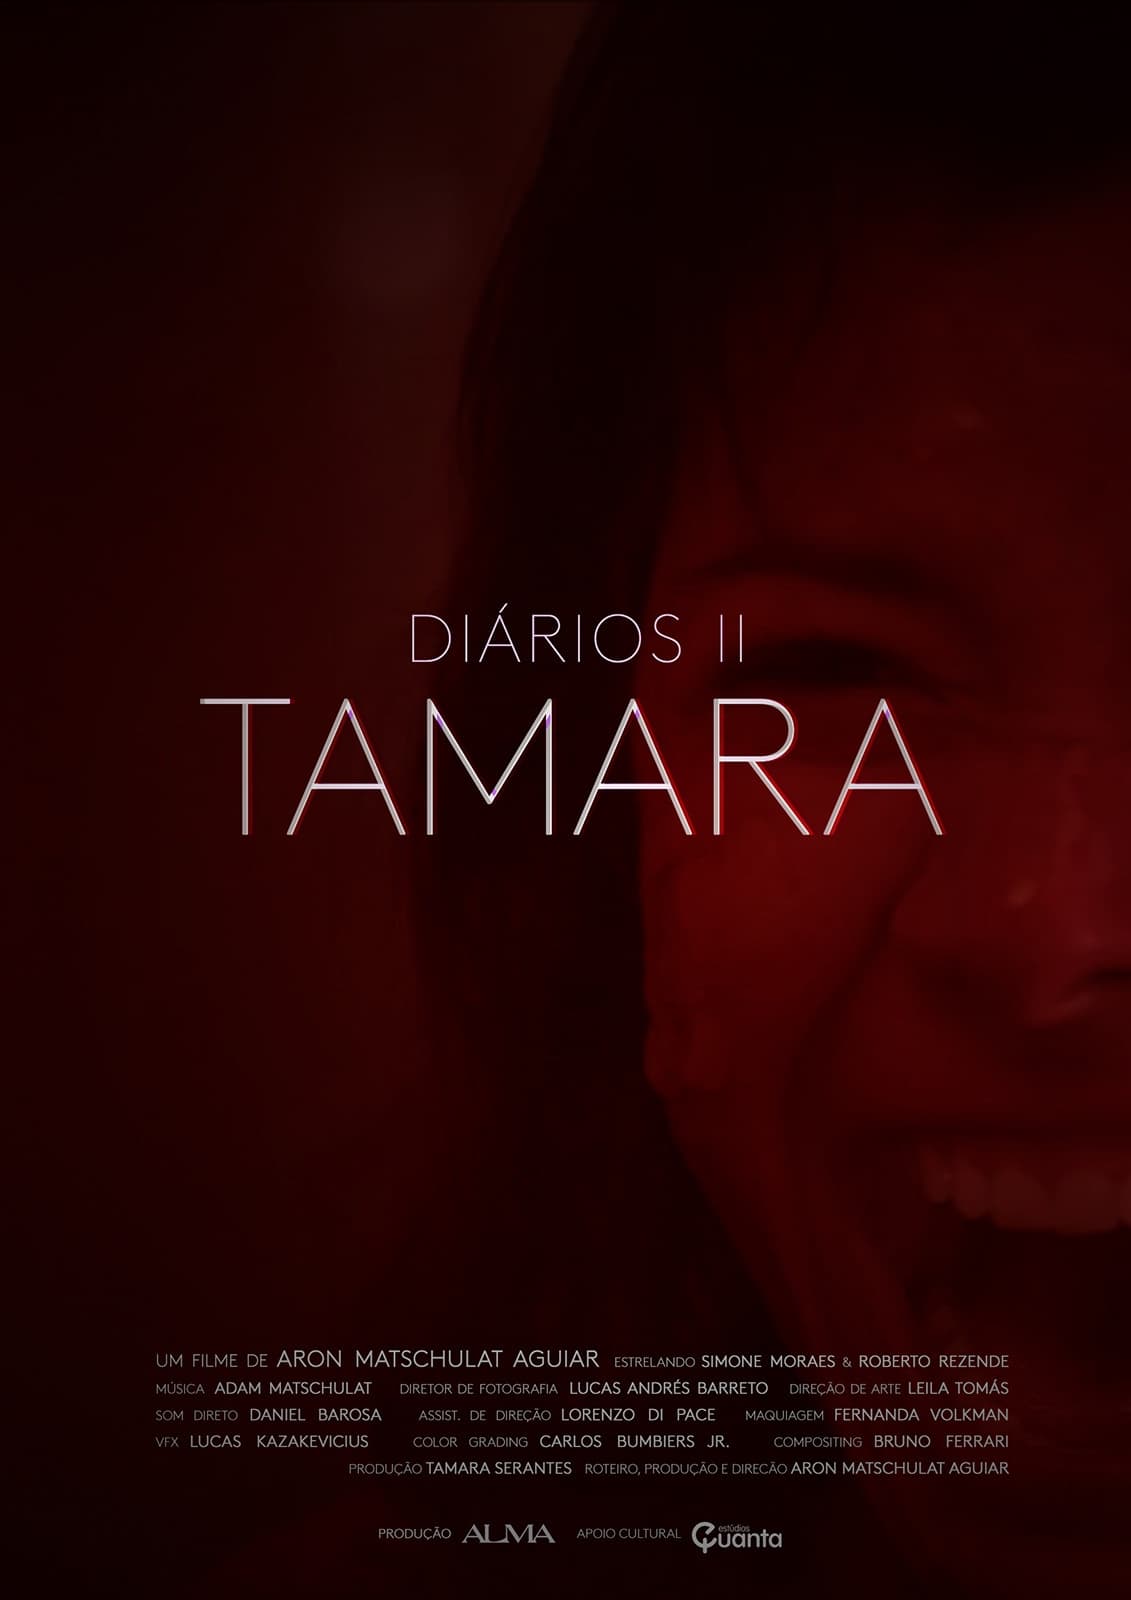 Diaries II: Tamara